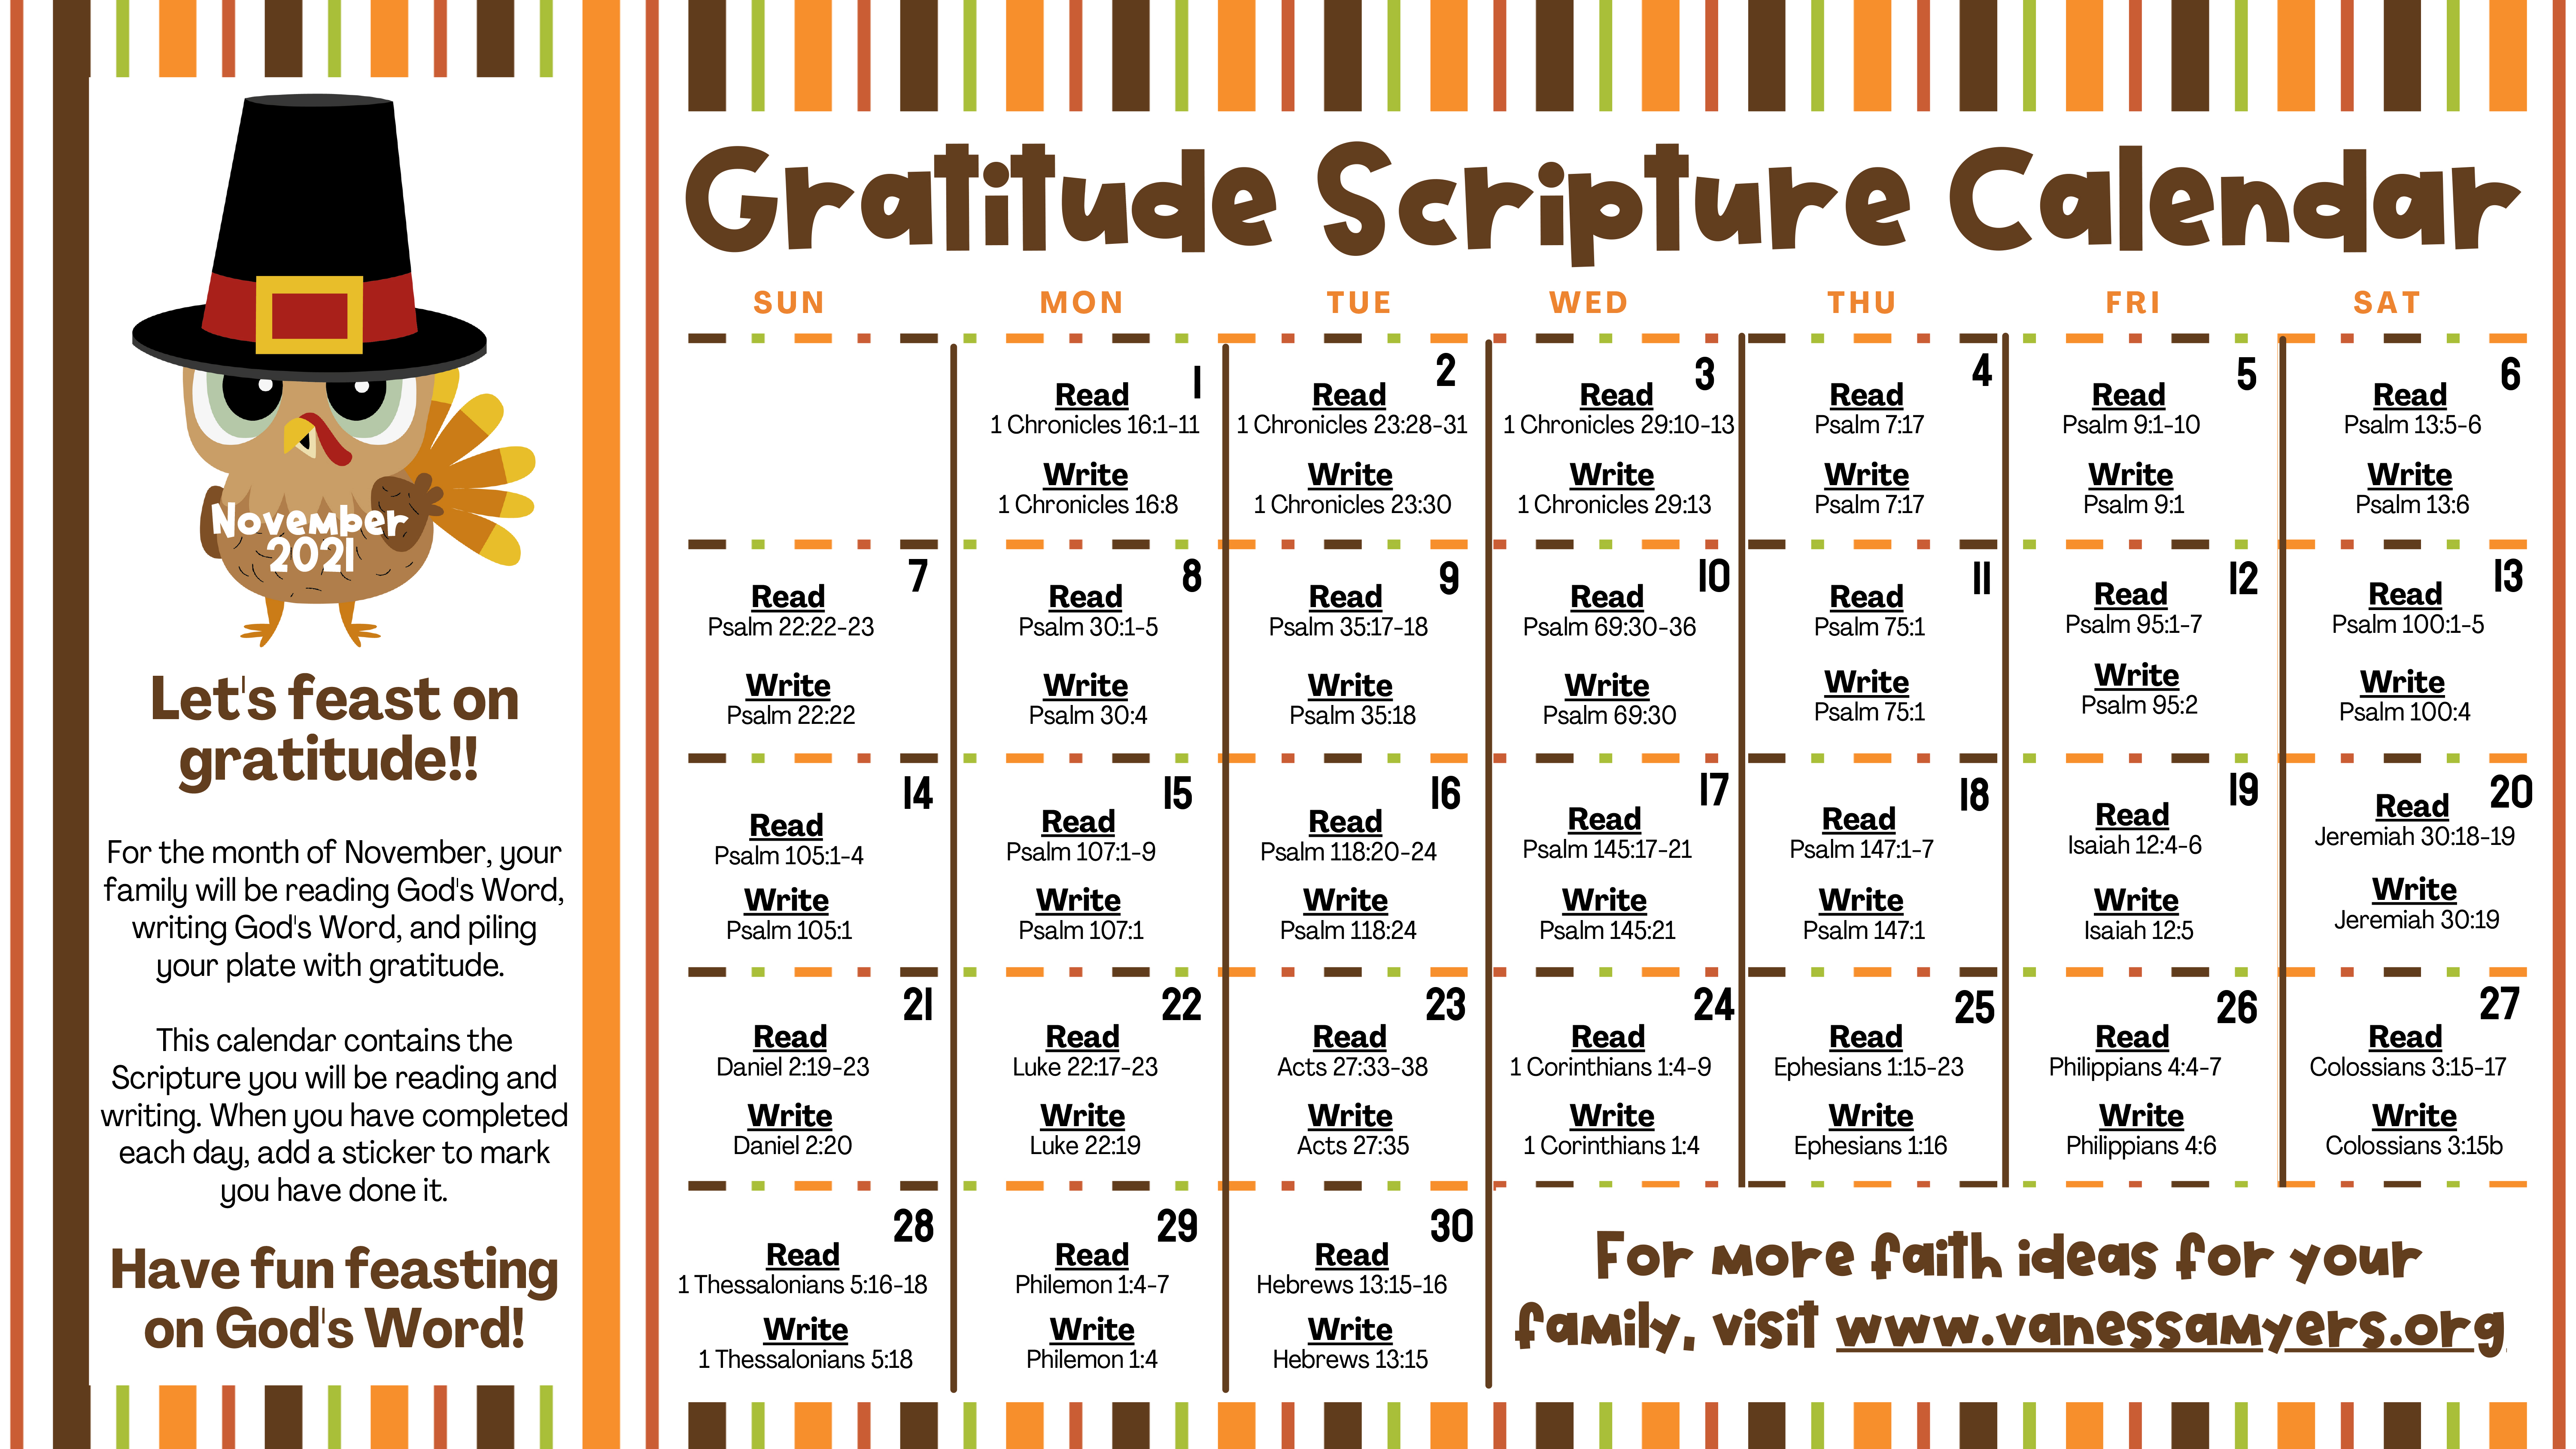 3. Gratitude Scripture Calendar (PDF)